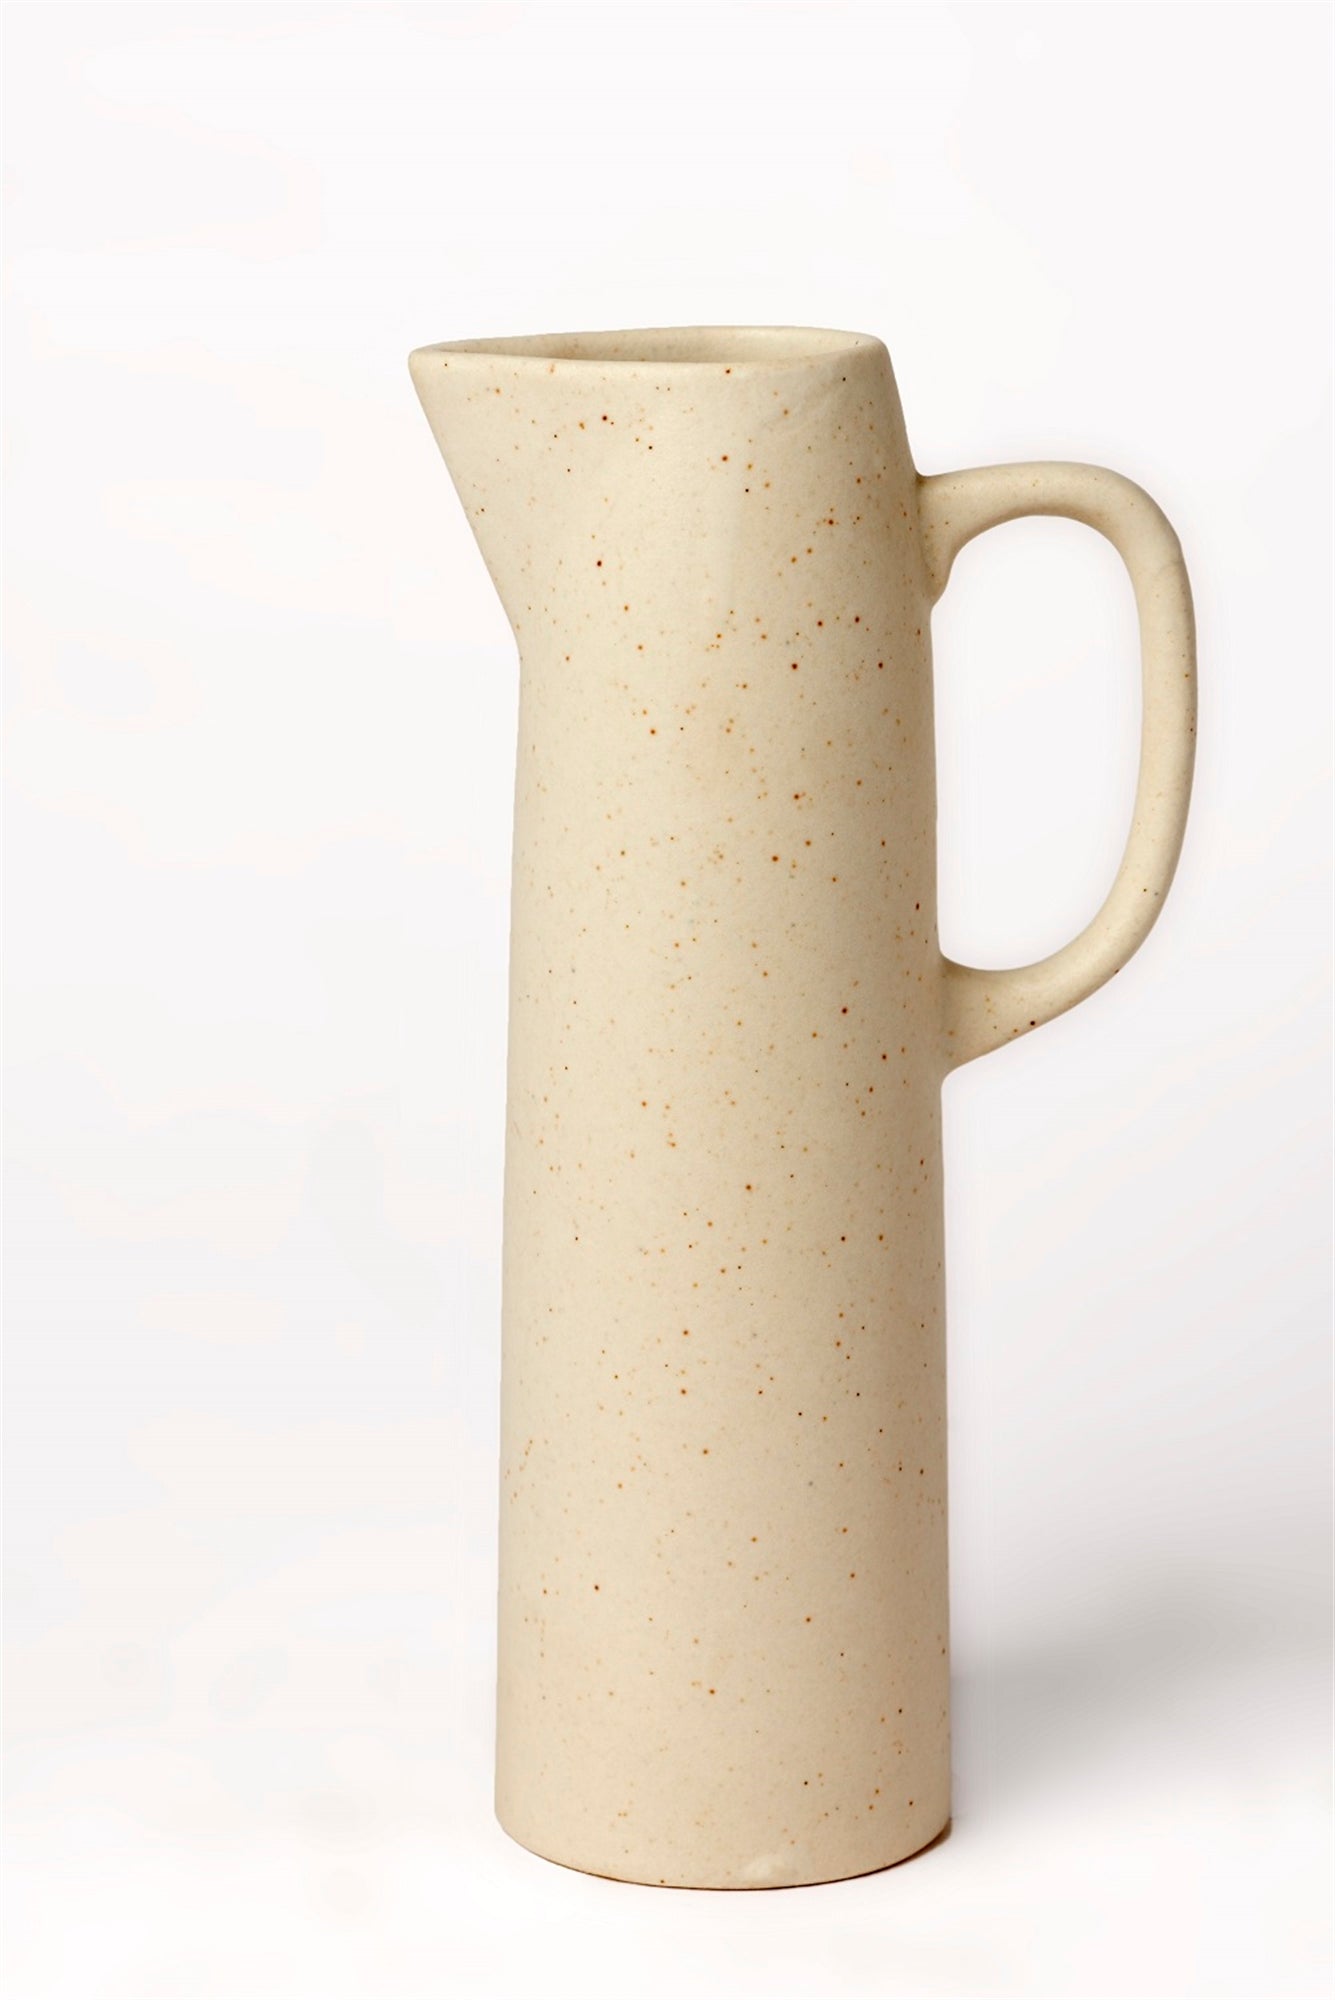 Evie Ceramic Pitcher - Stone/Cream